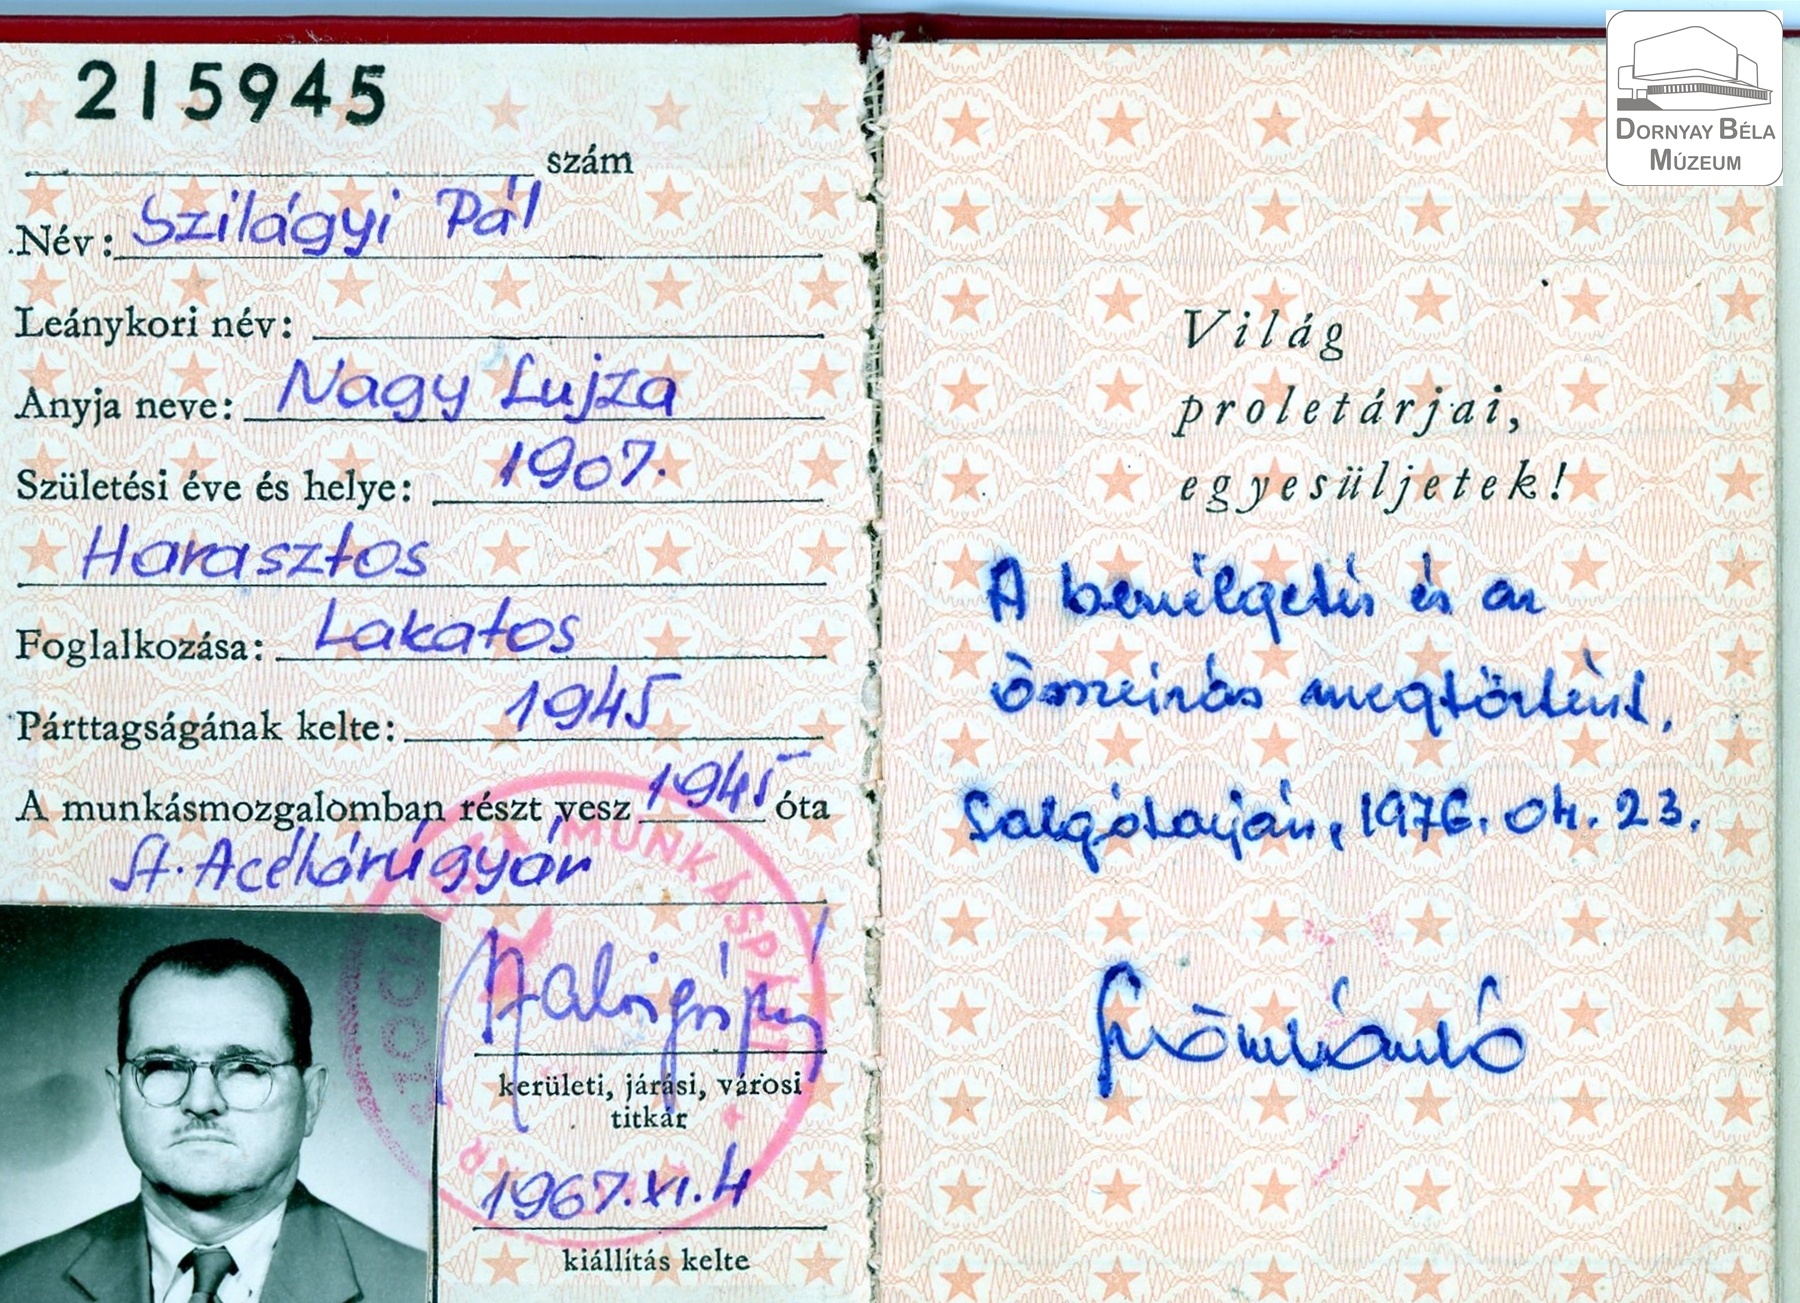 Szilágyi Pál párttagsági könyve (Dornyay Béla Múzeum, Salgótarján CC BY-NC-SA)